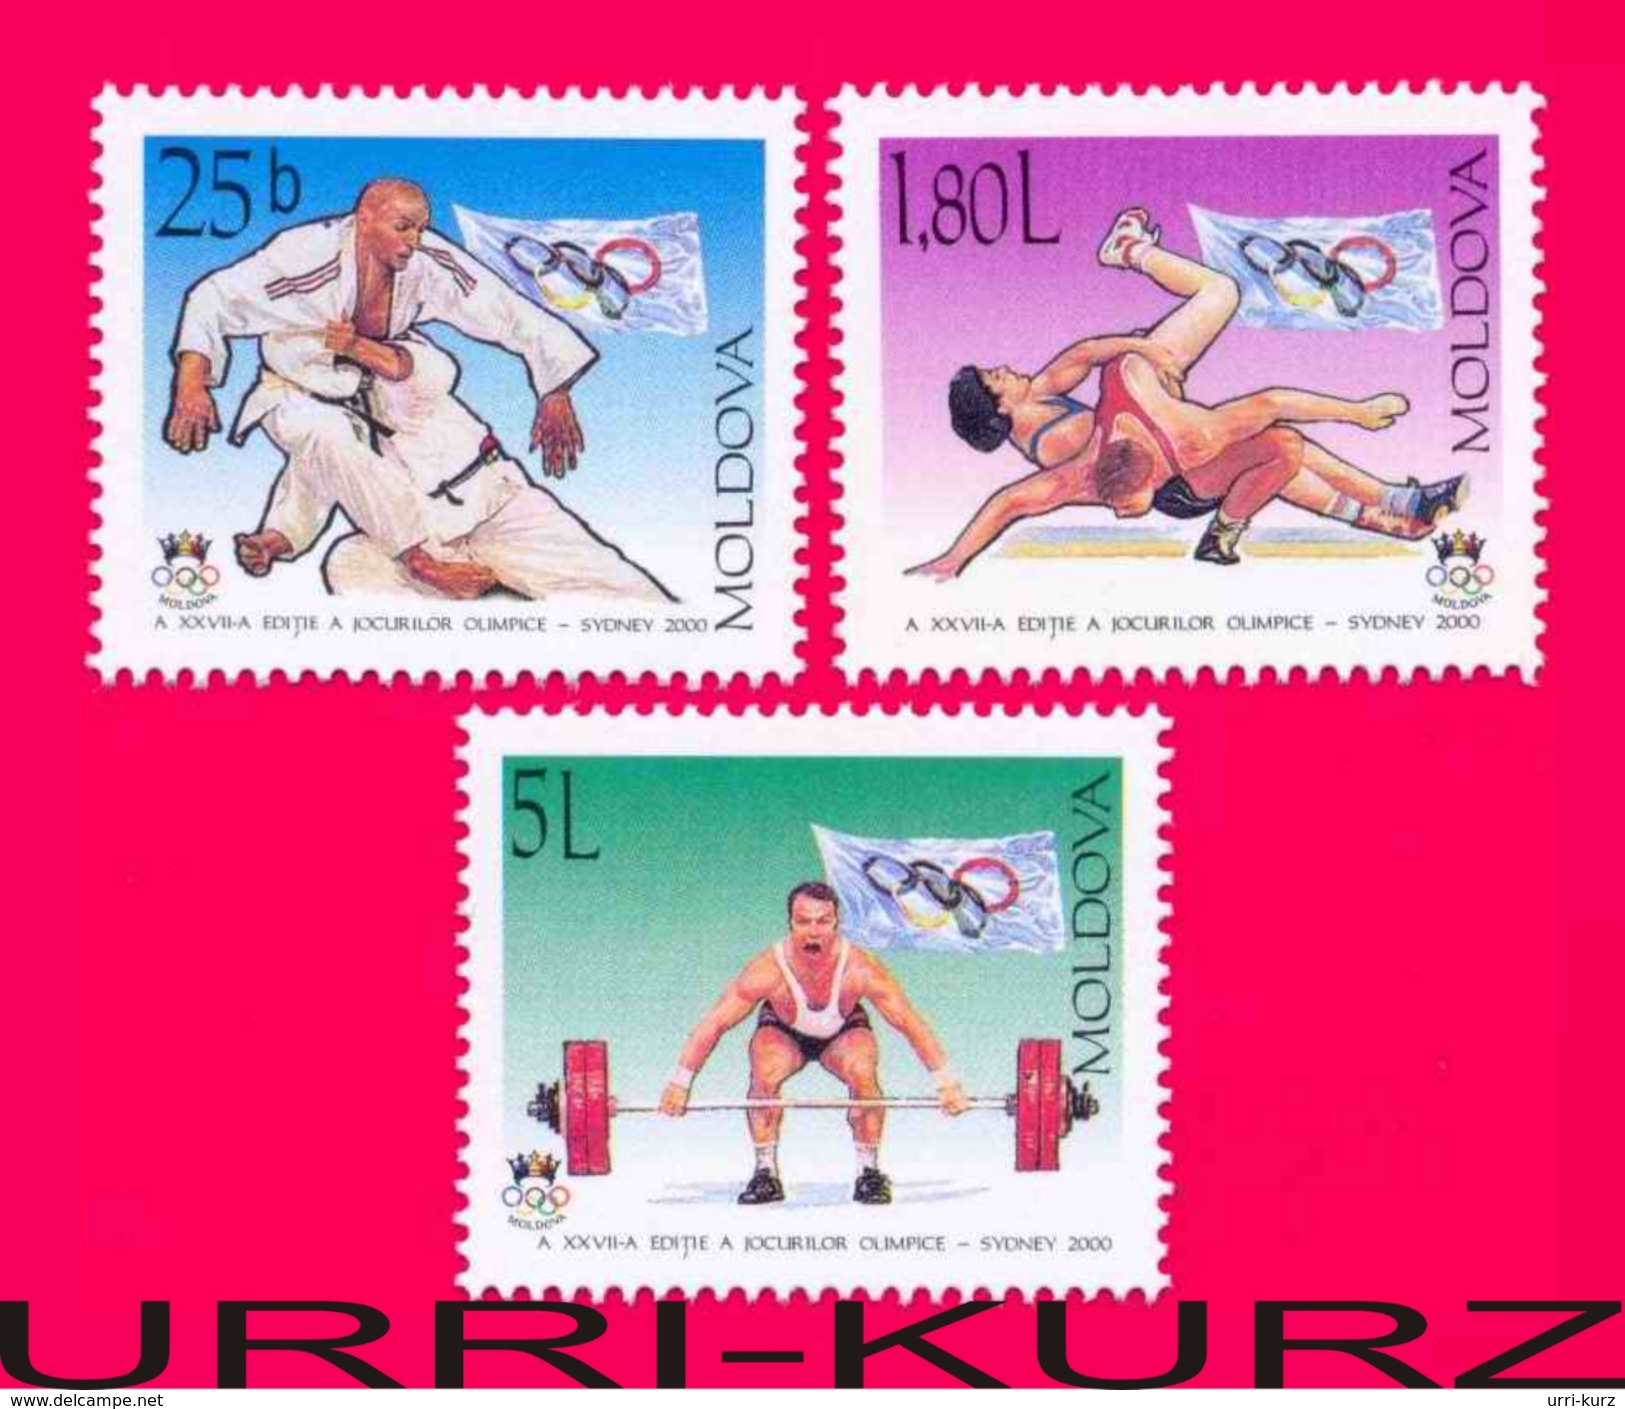 MOLDOVA 2000 Sports XXVII Summer Olympics Olympic Games Sydney Australia Judo Wrestling Weightlifting 3v Mi370-372 MNH - Summer 2000: Sydney